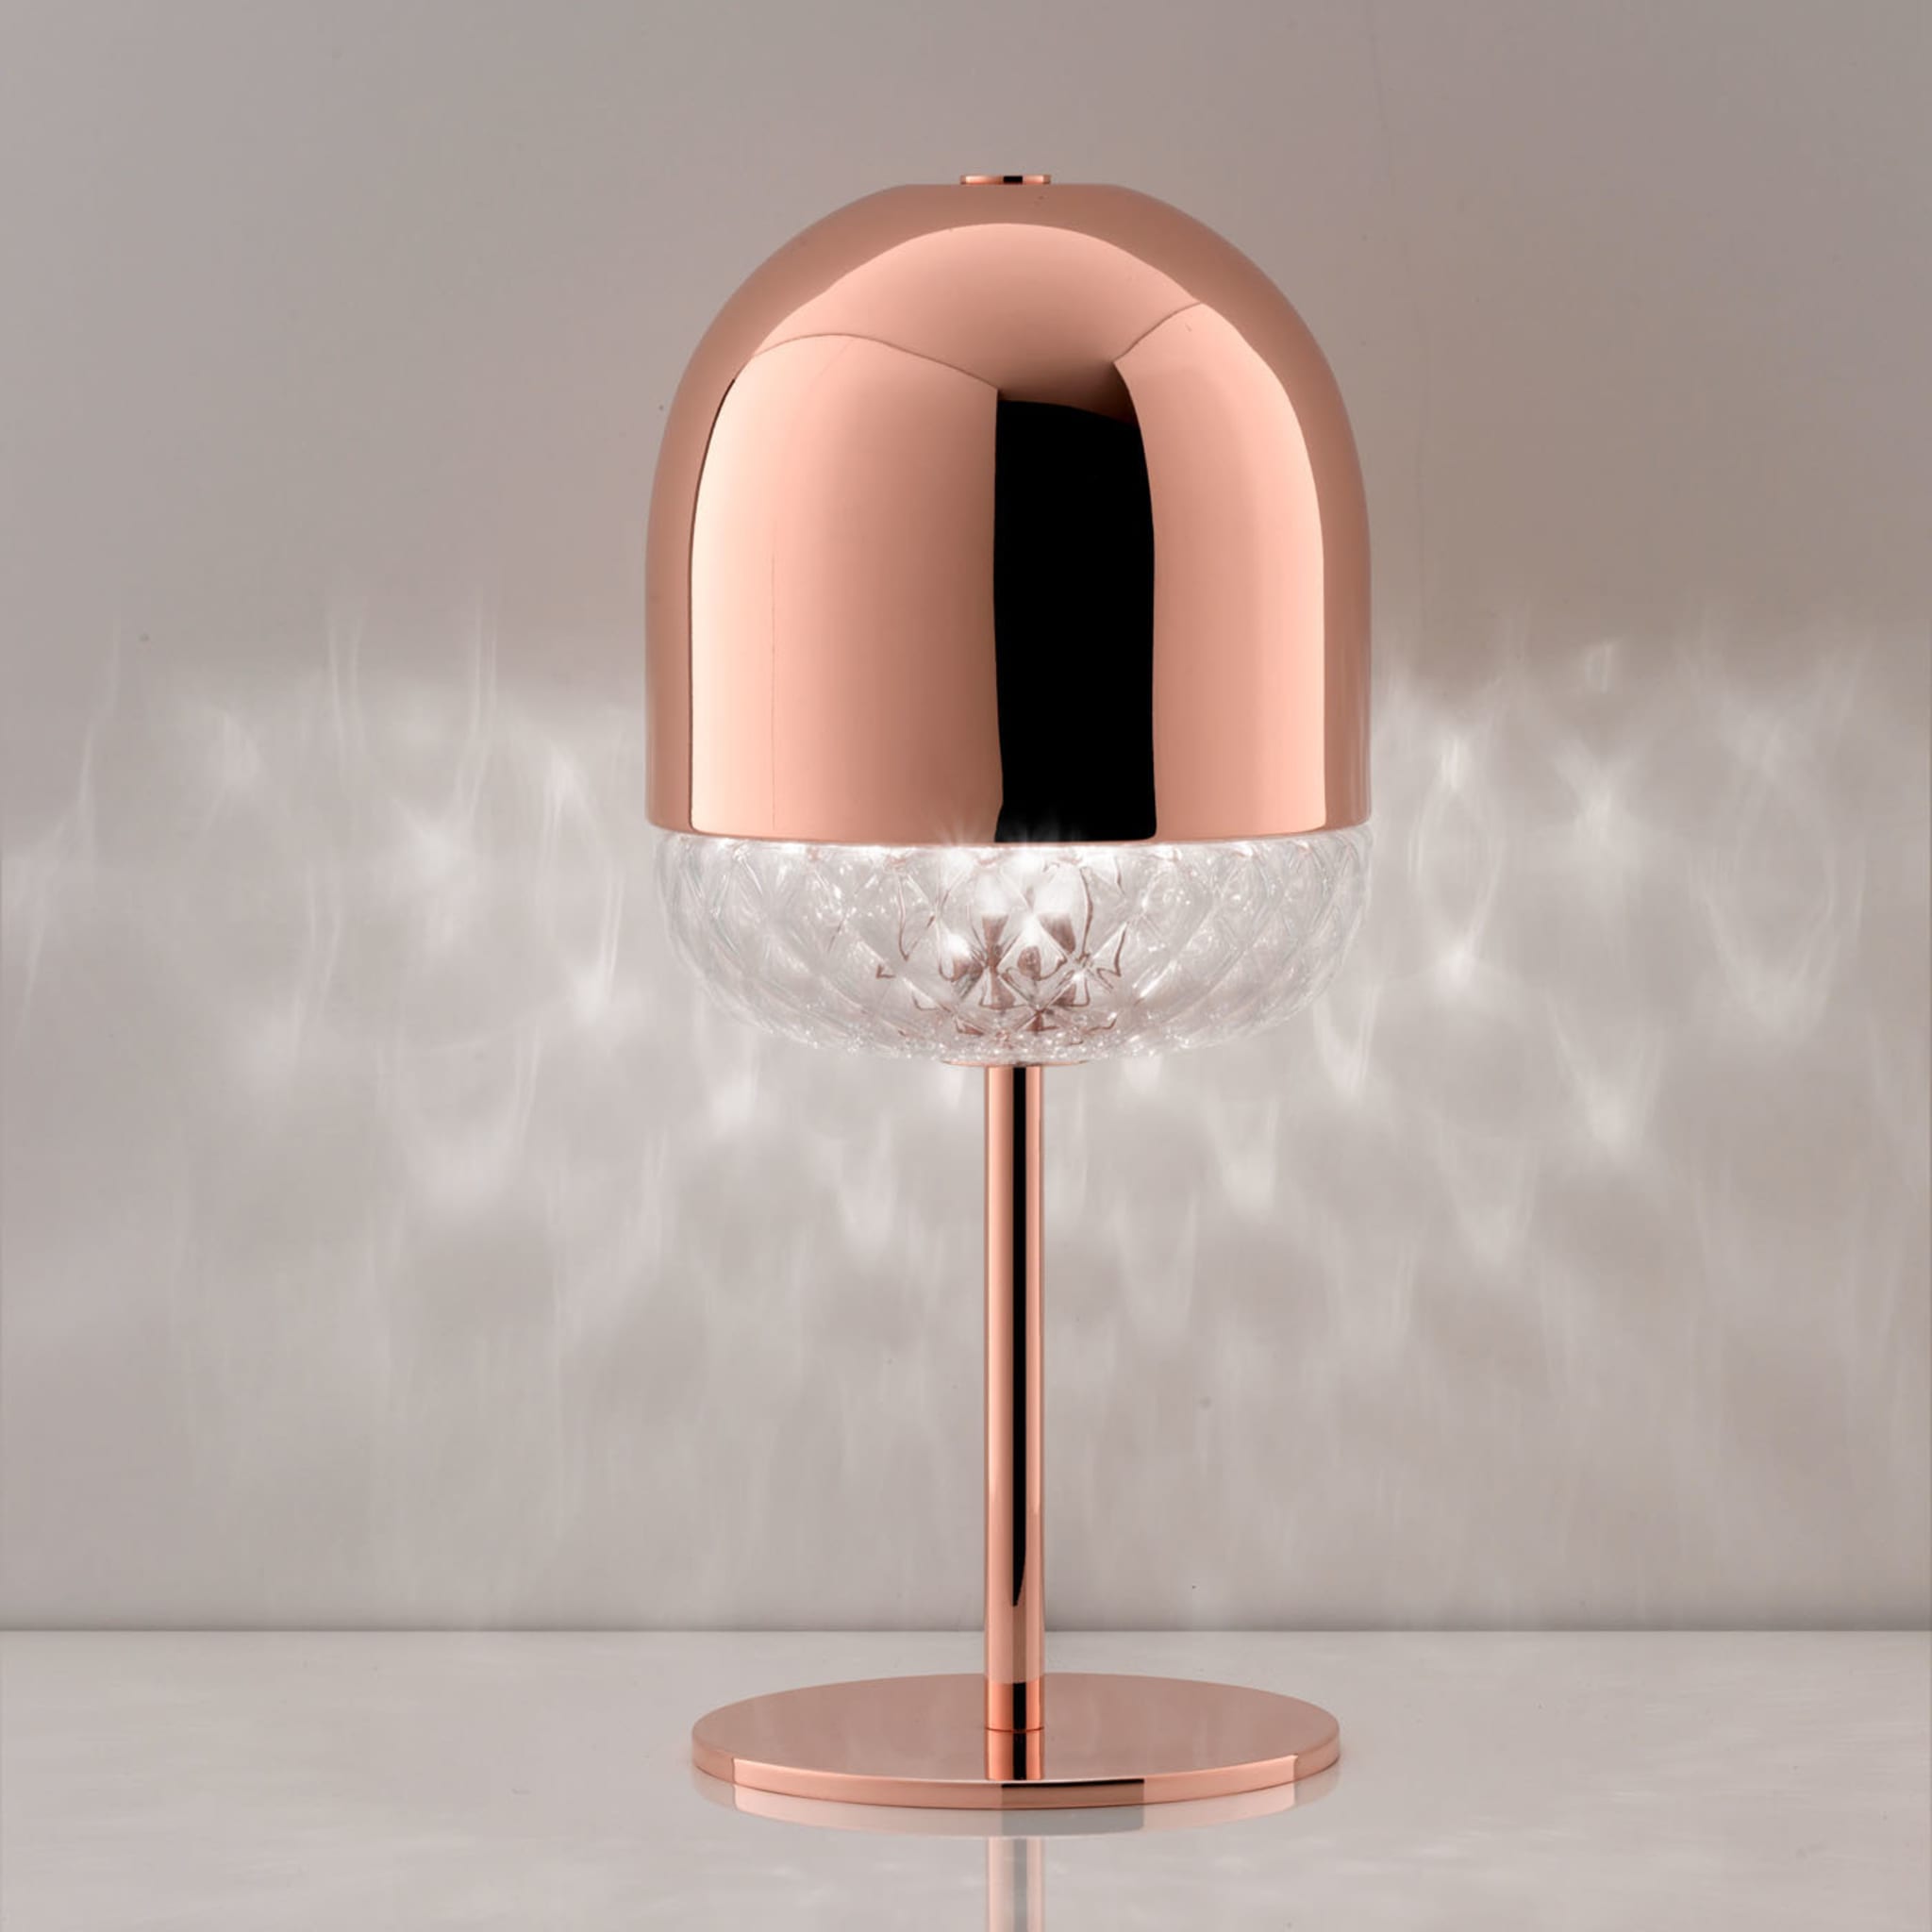 Balloton Table Lamp by Matteo Zorzenoni - Alternative view 1